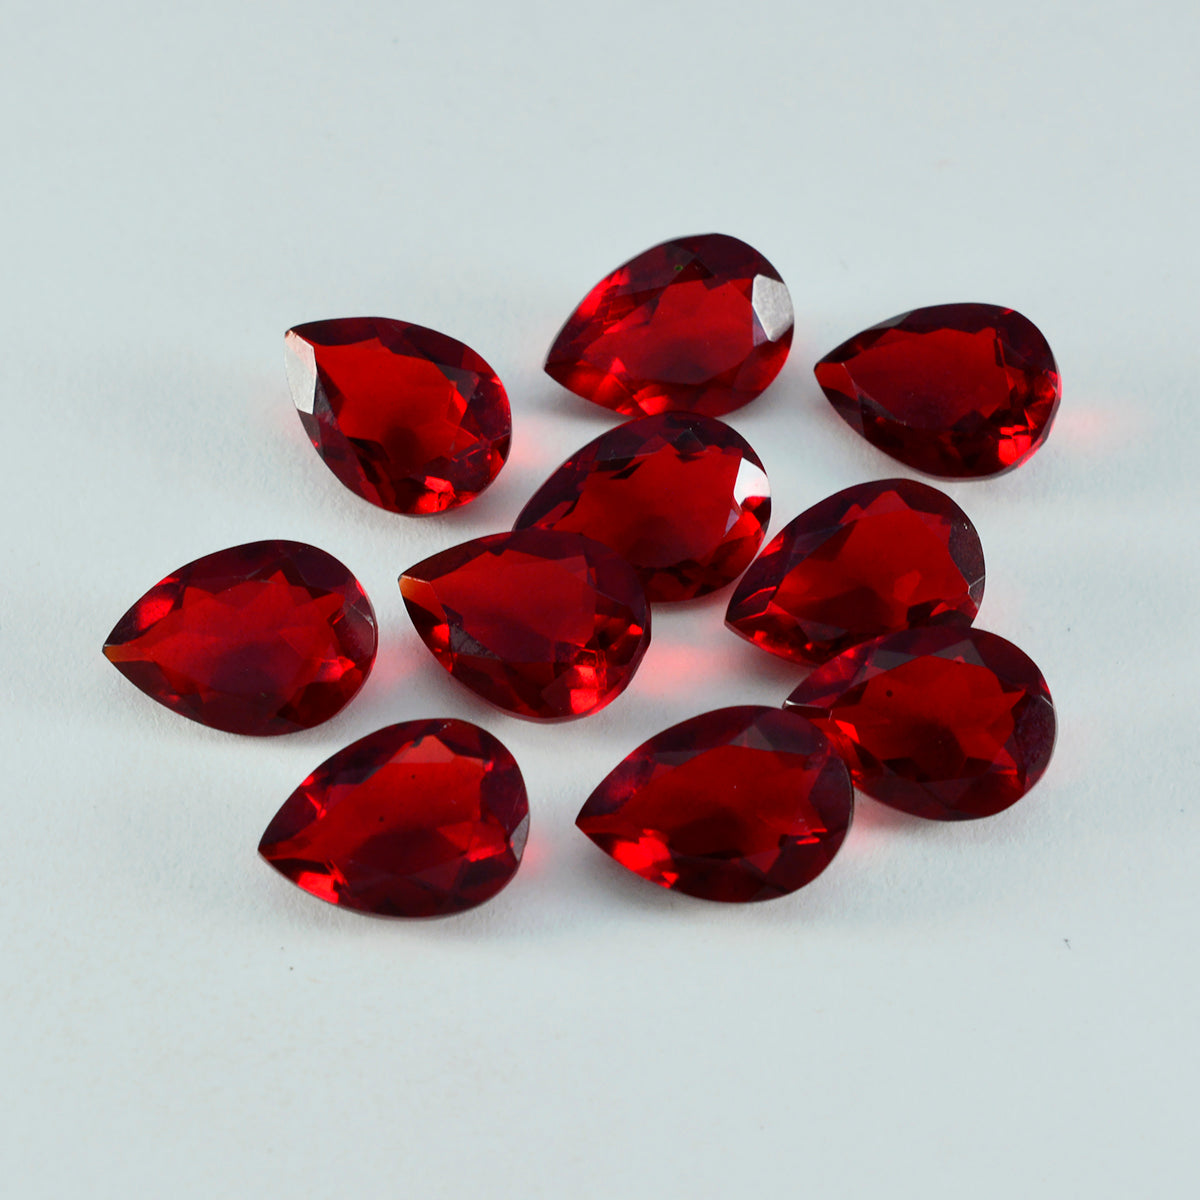 Riyogems 1 pieza rubí rojo cz facetado 6x9 mm forma de pera piedra preciosa de calidad de belleza